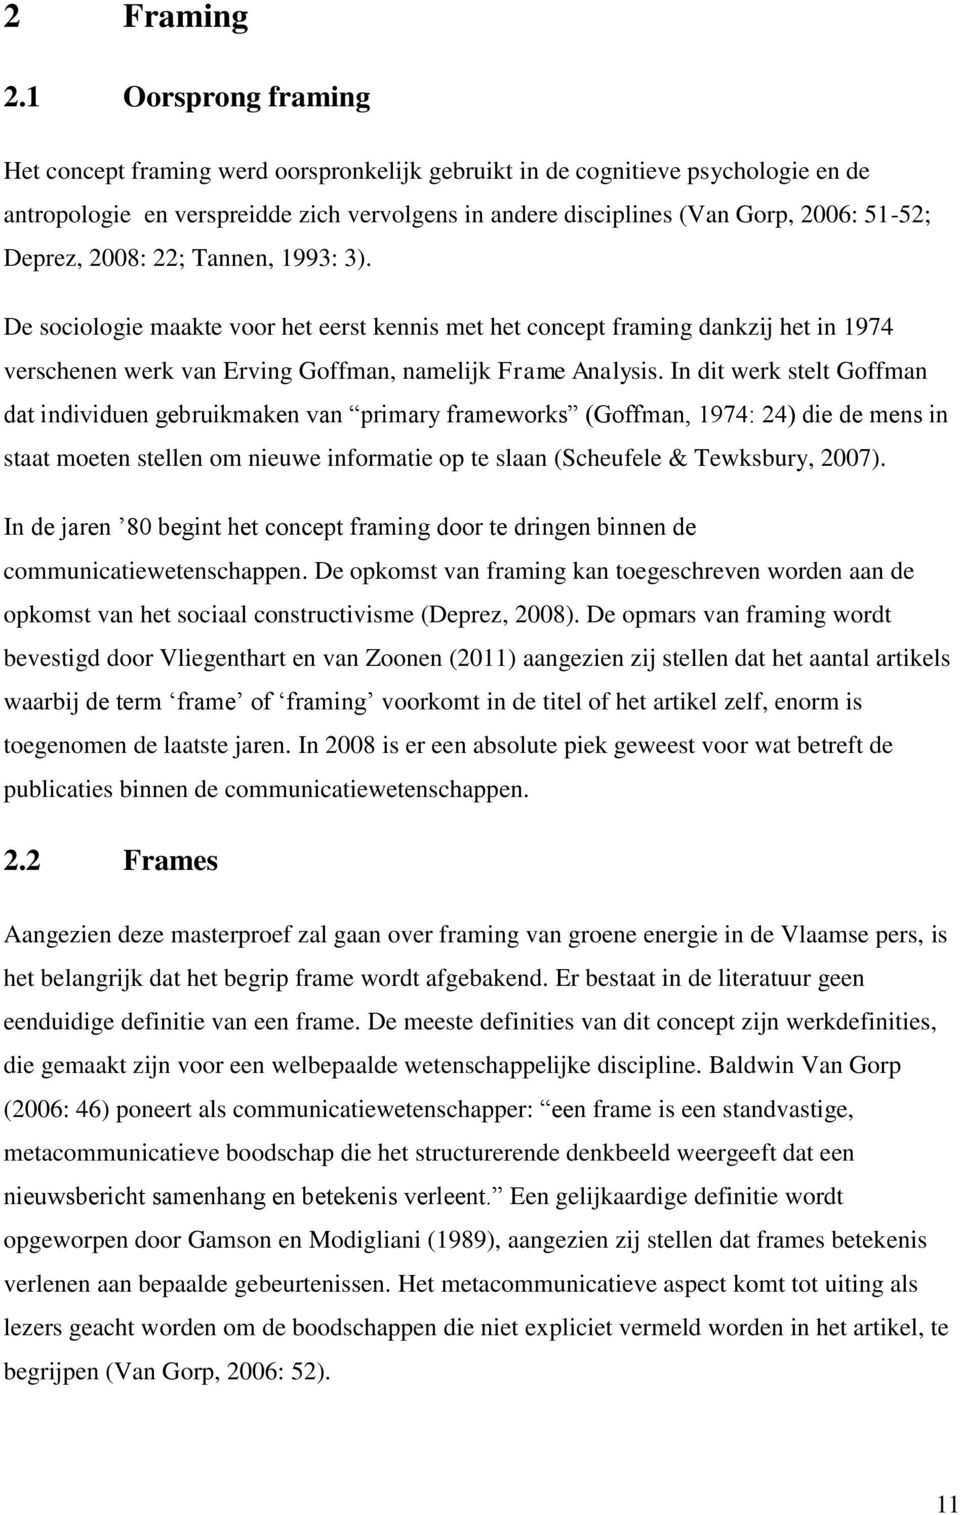 Deprez, 2008: 22; Tannen, 1993: 3). De sociologie maakte voor het eerst kennis met het concept framing dankzij het in 1974 verschenen werk van Erving Goffman, namelijk Frame Analysis.